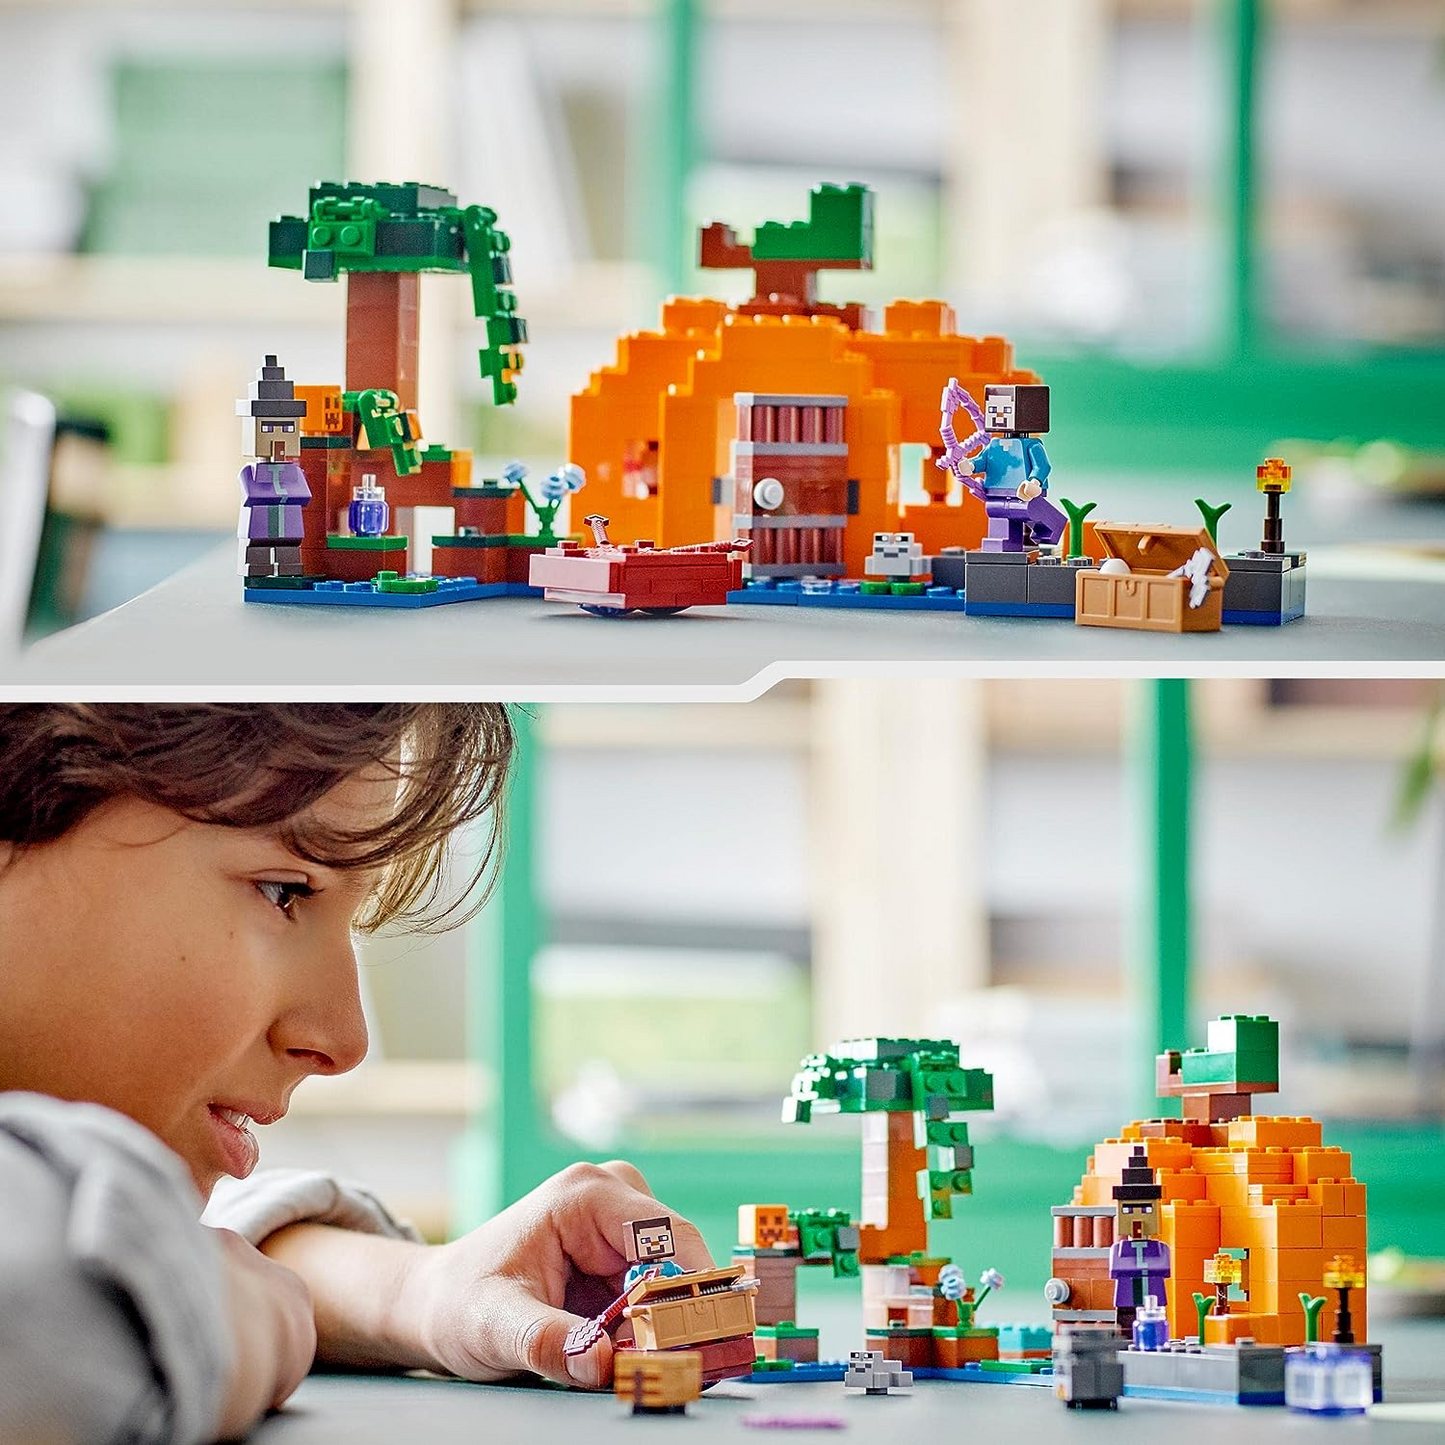 LEGO 21248 Minecraft The Pumpkin Farm Set, casa de brinquedo montável com sapo, barco, baú do tesouro e figuras de Steve e bruxa, brinquedos de ação do bioma do pântano, presente para crianças, meninos, meninas